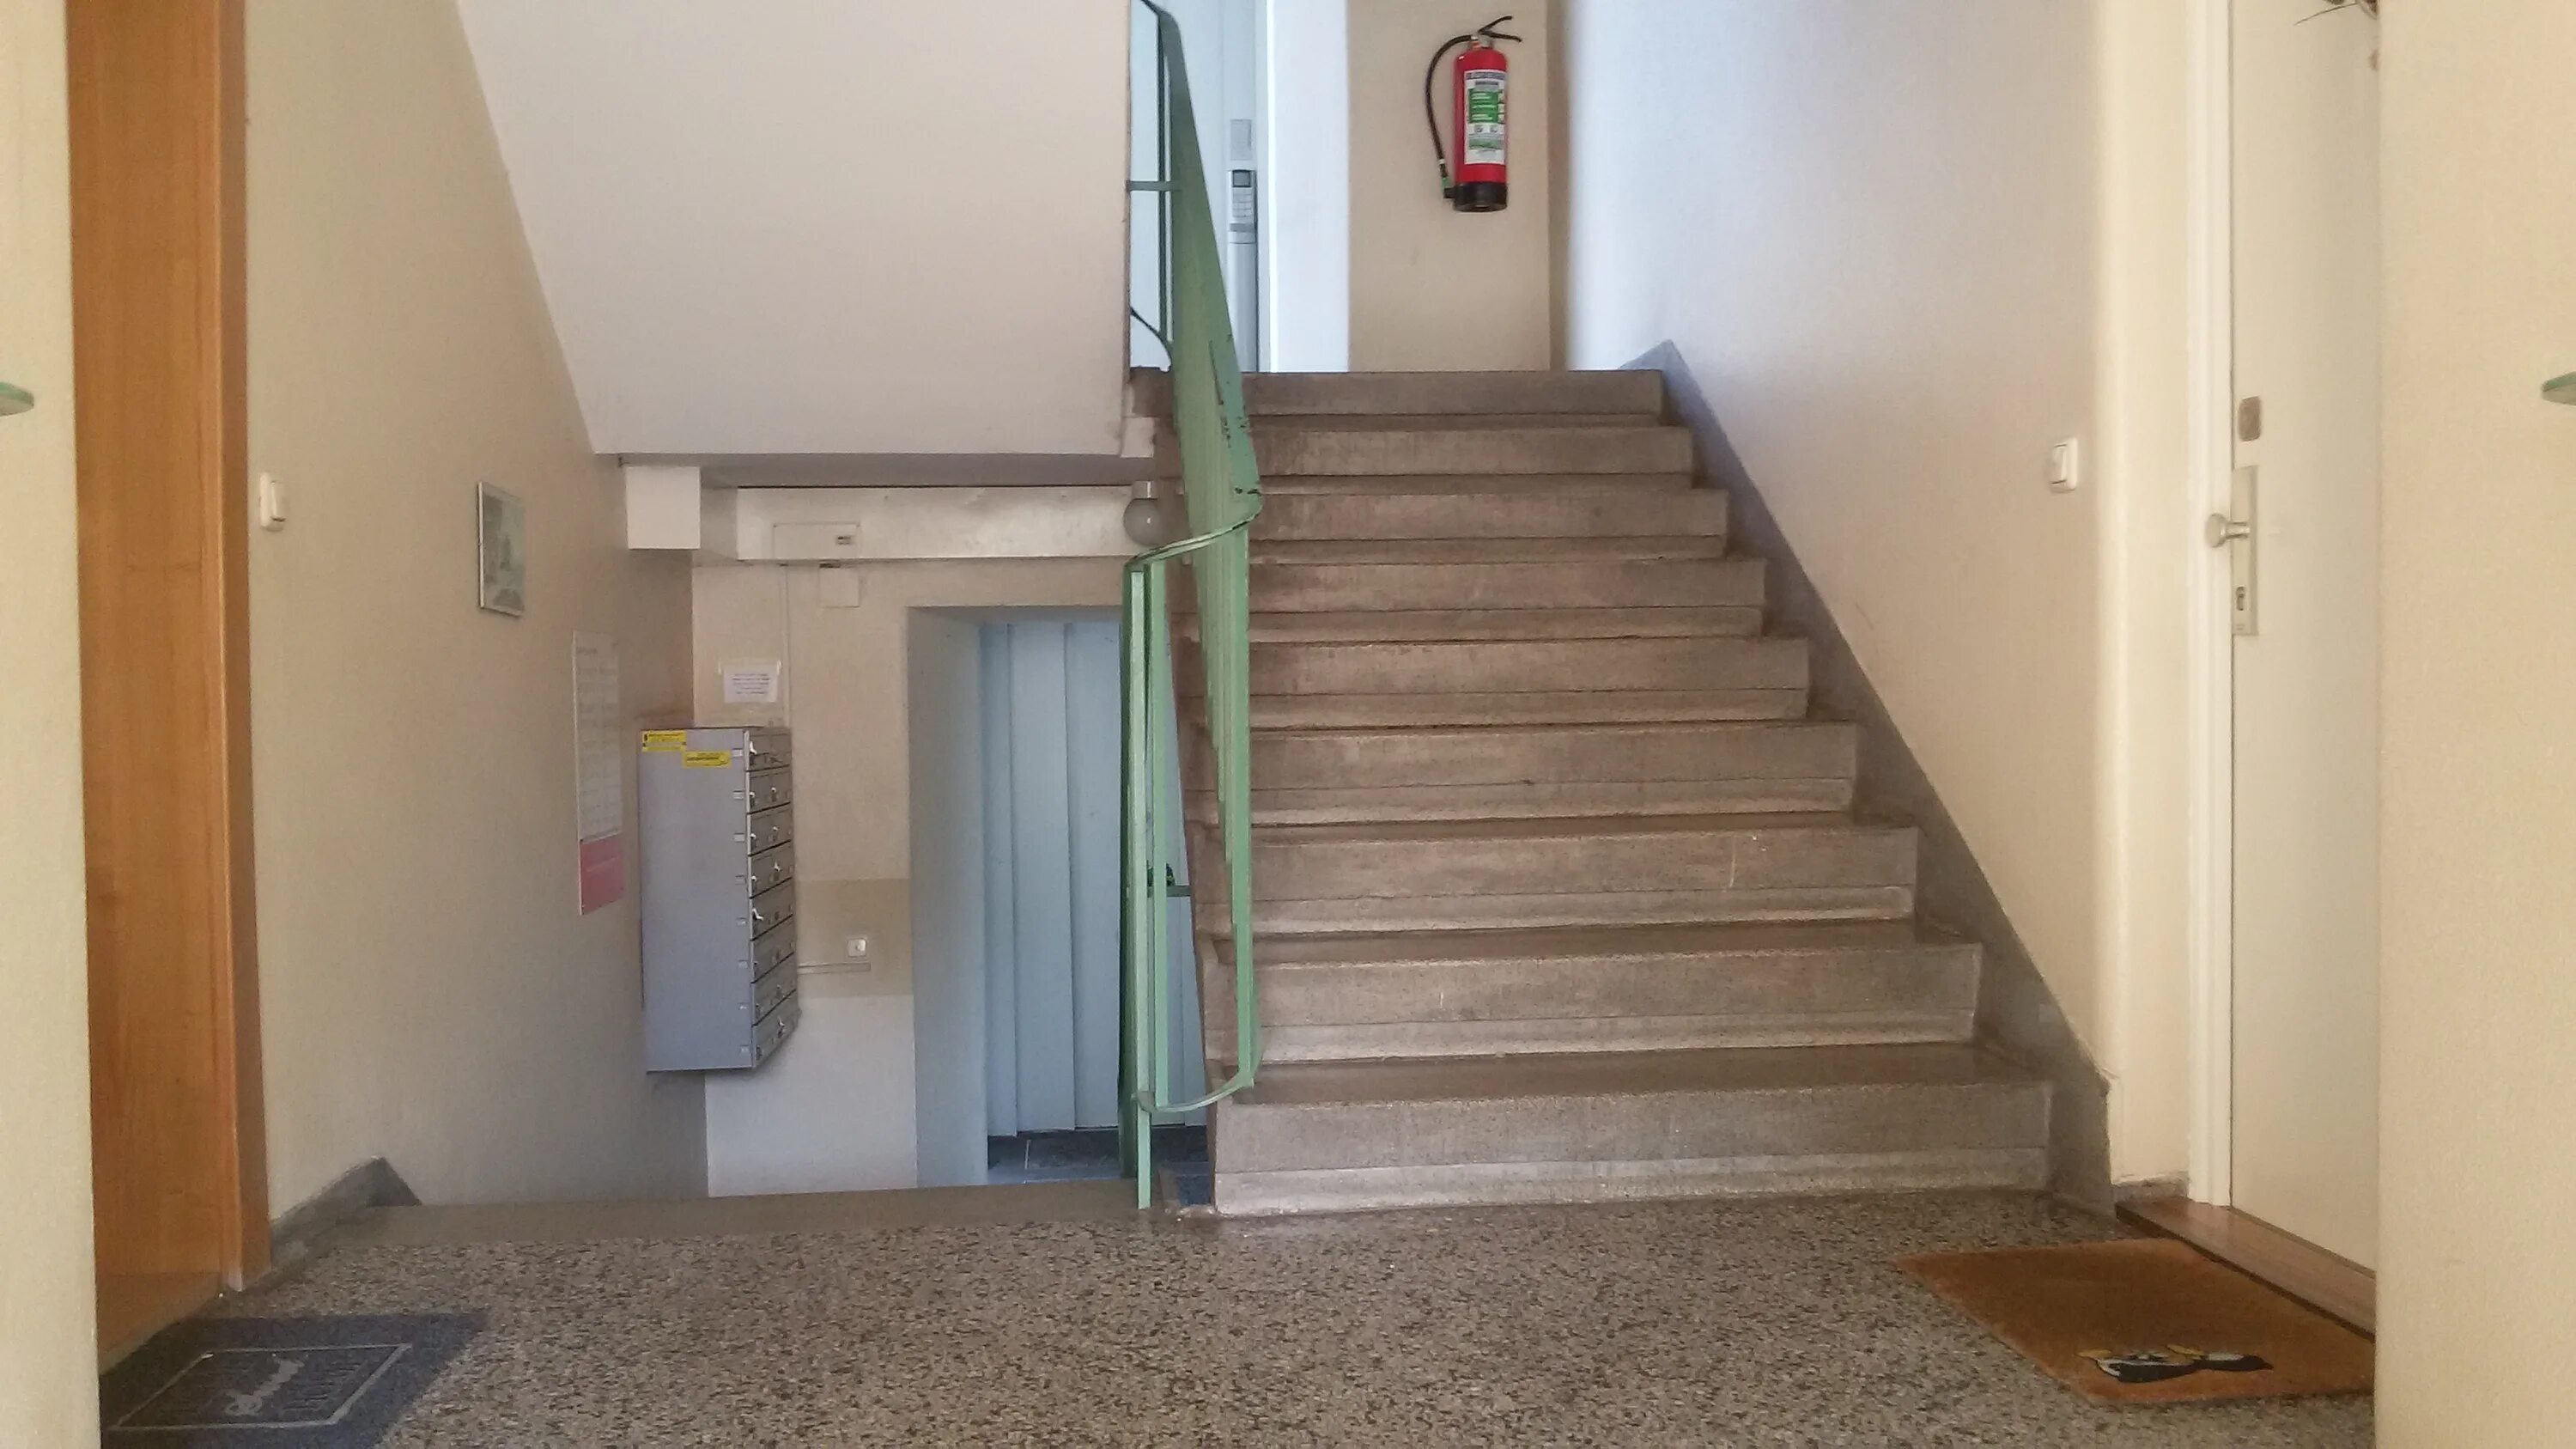 Ооо первый этаж. Подъездные лестницы. Лестничная площадка. Лестничная площадка в подъезде. Лестничный марш в подъезде.